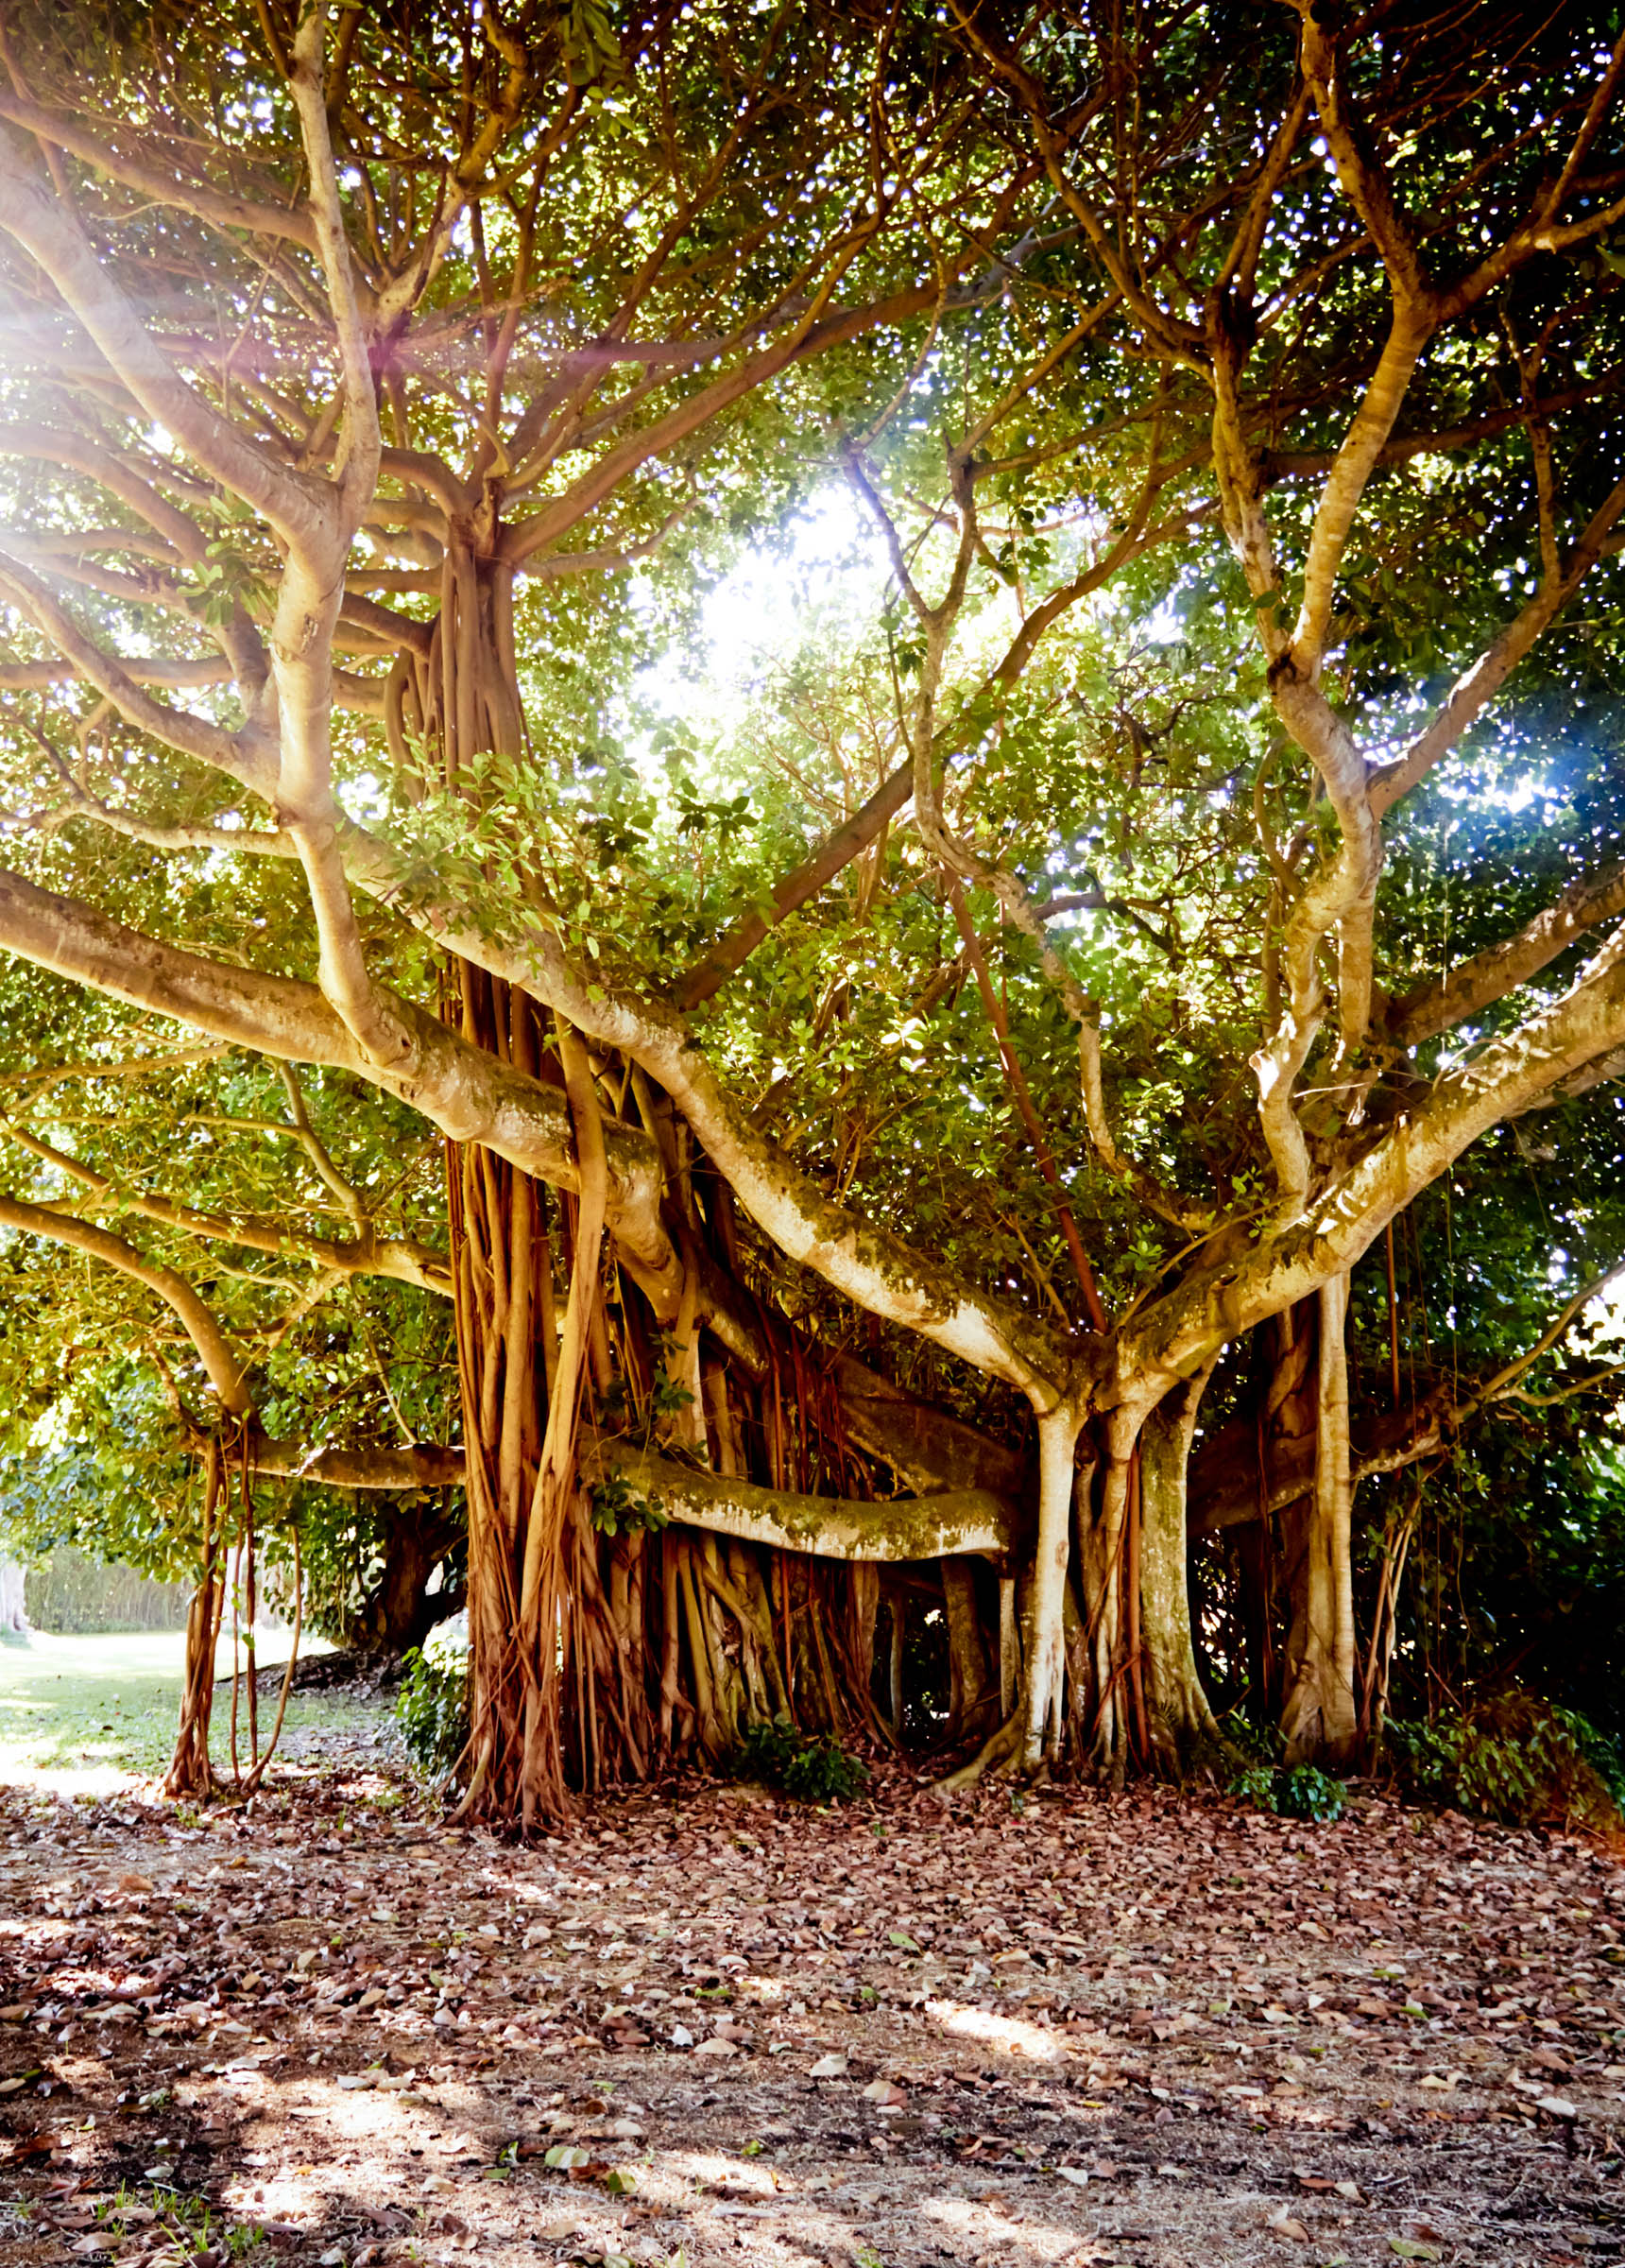 Large banyan tree